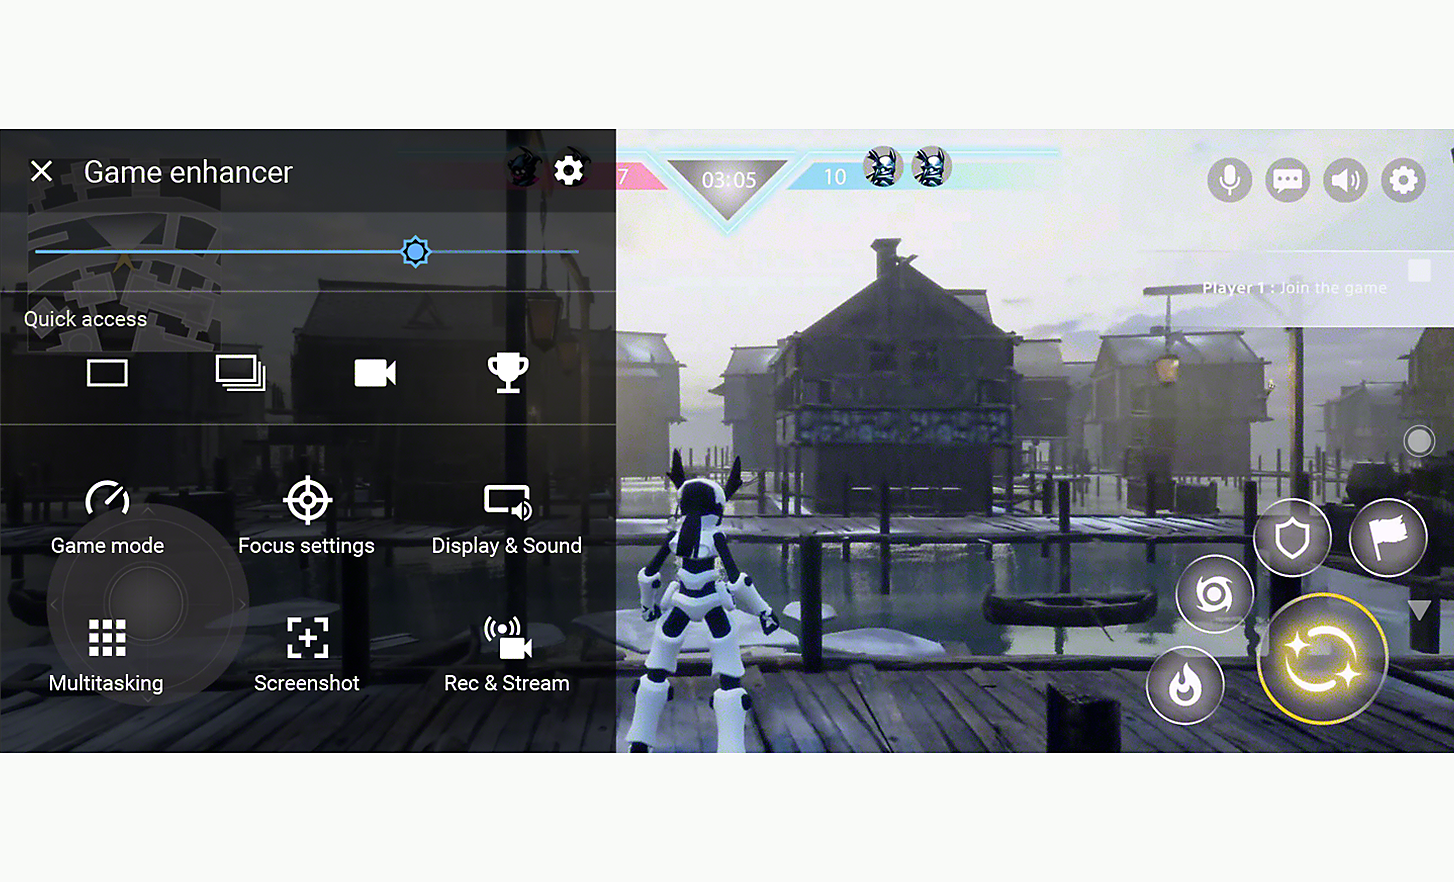 螢幕截圖展示遊戲增強器用戶介面